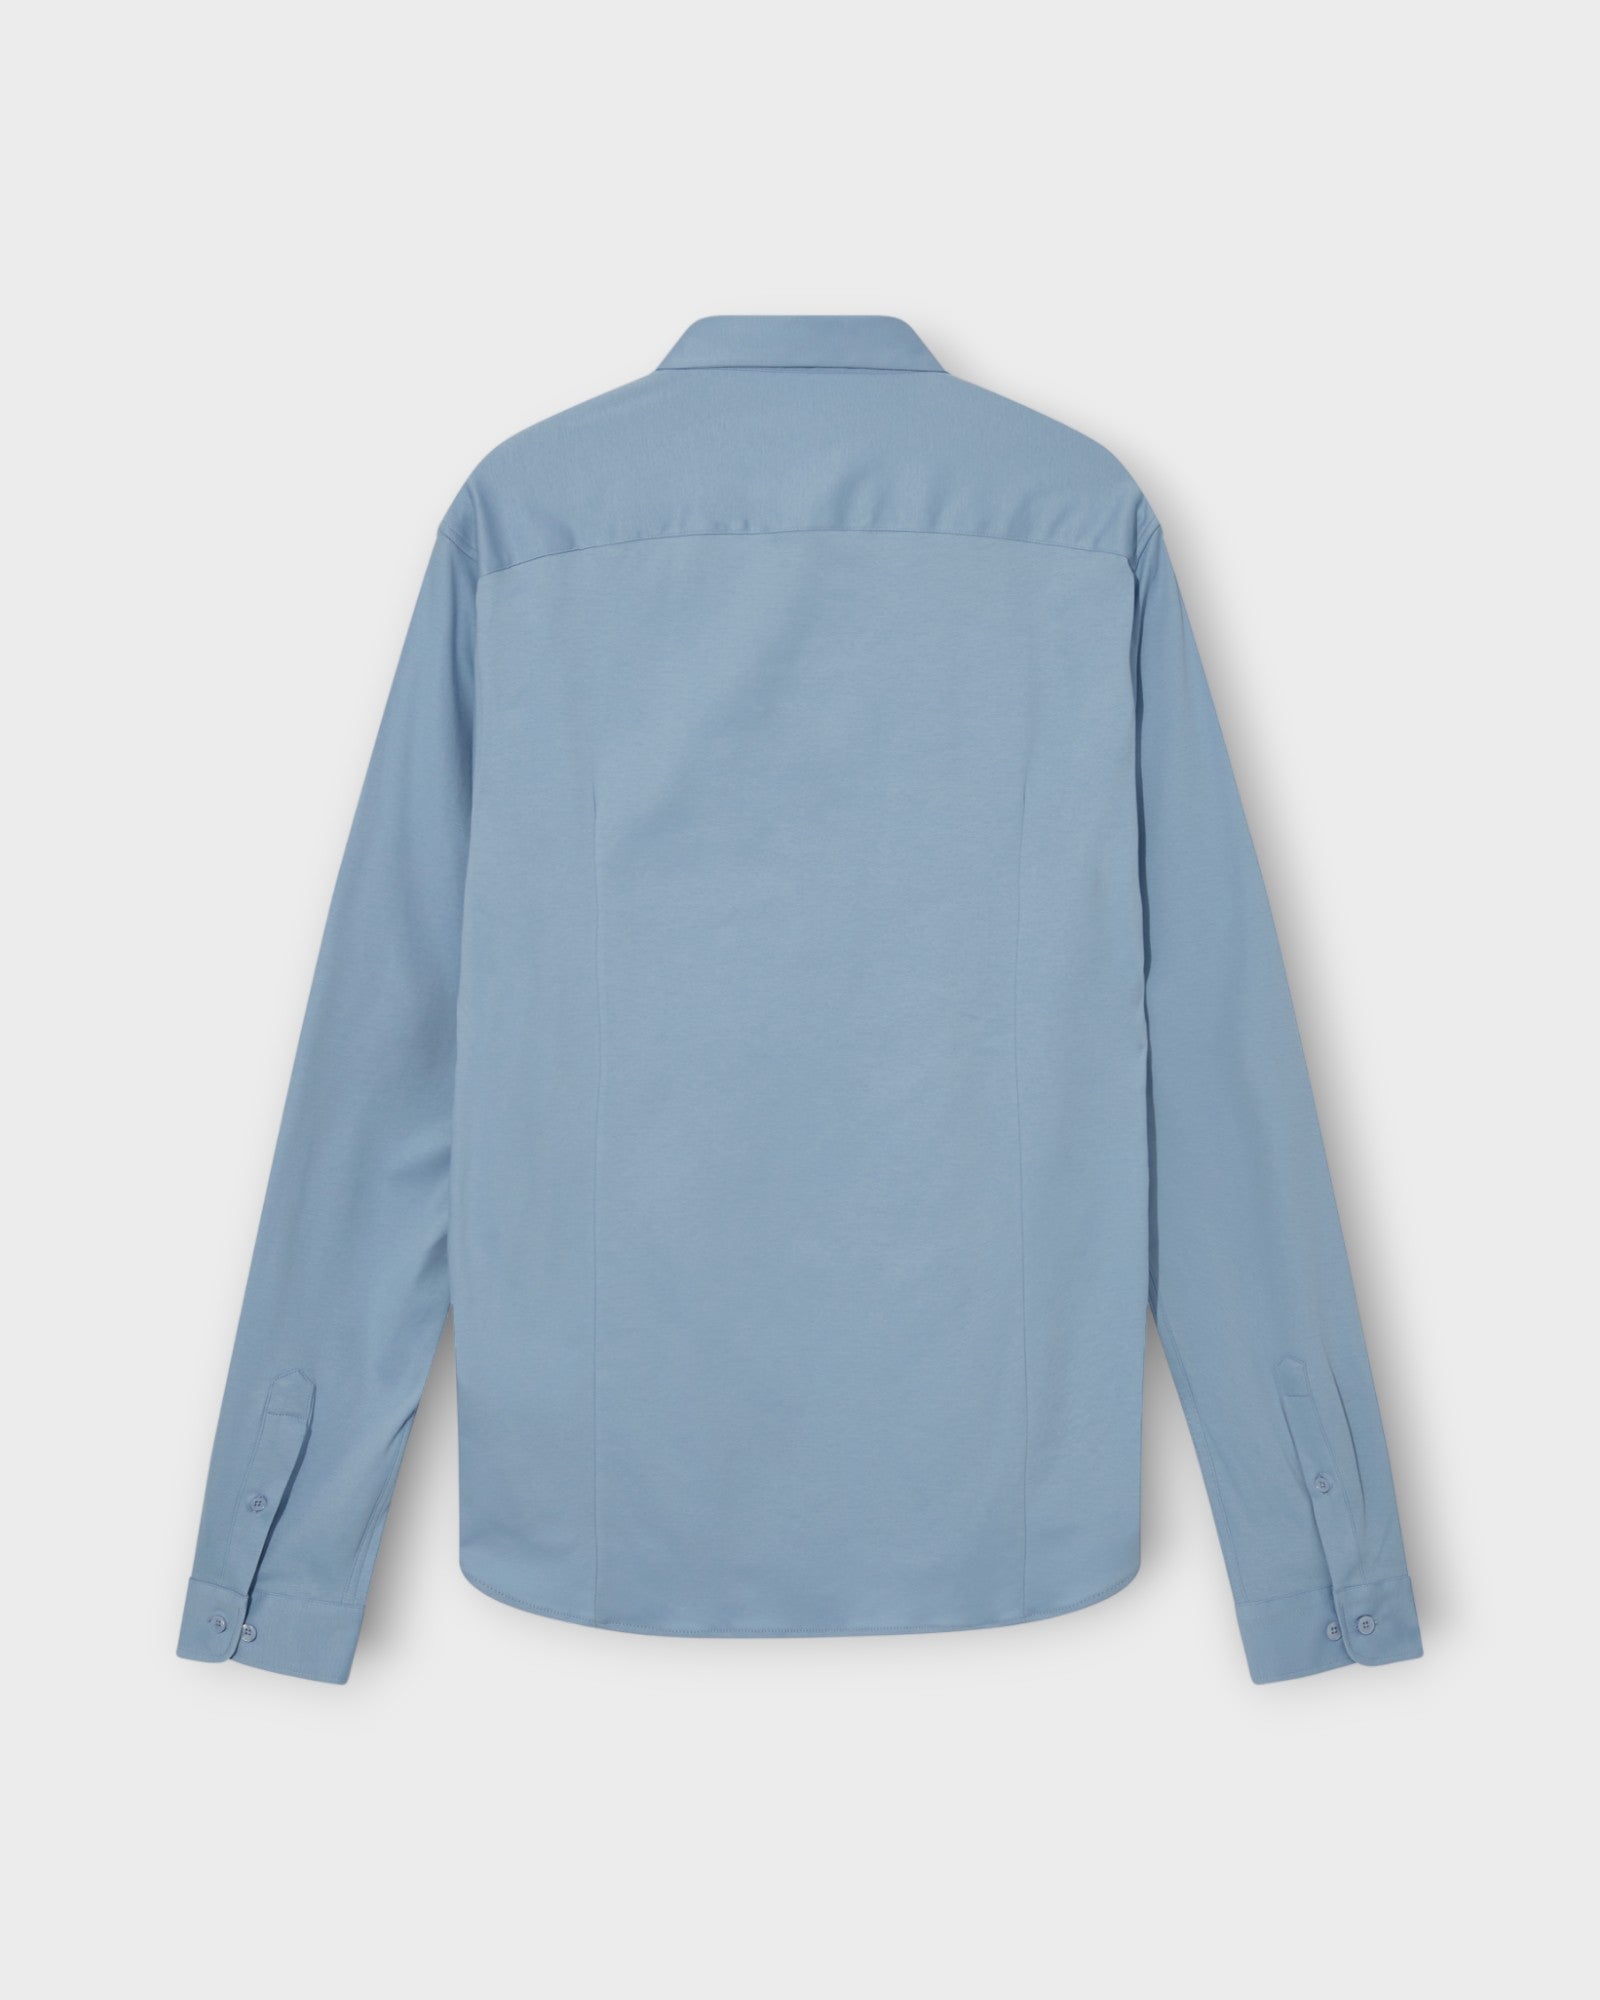 Marco Crunch Jersey Shirt Bel Air Blue fra Mos Mosh Gallery. Langærmet lyseblå stretch skjorte til mænd. Her set bagfra.